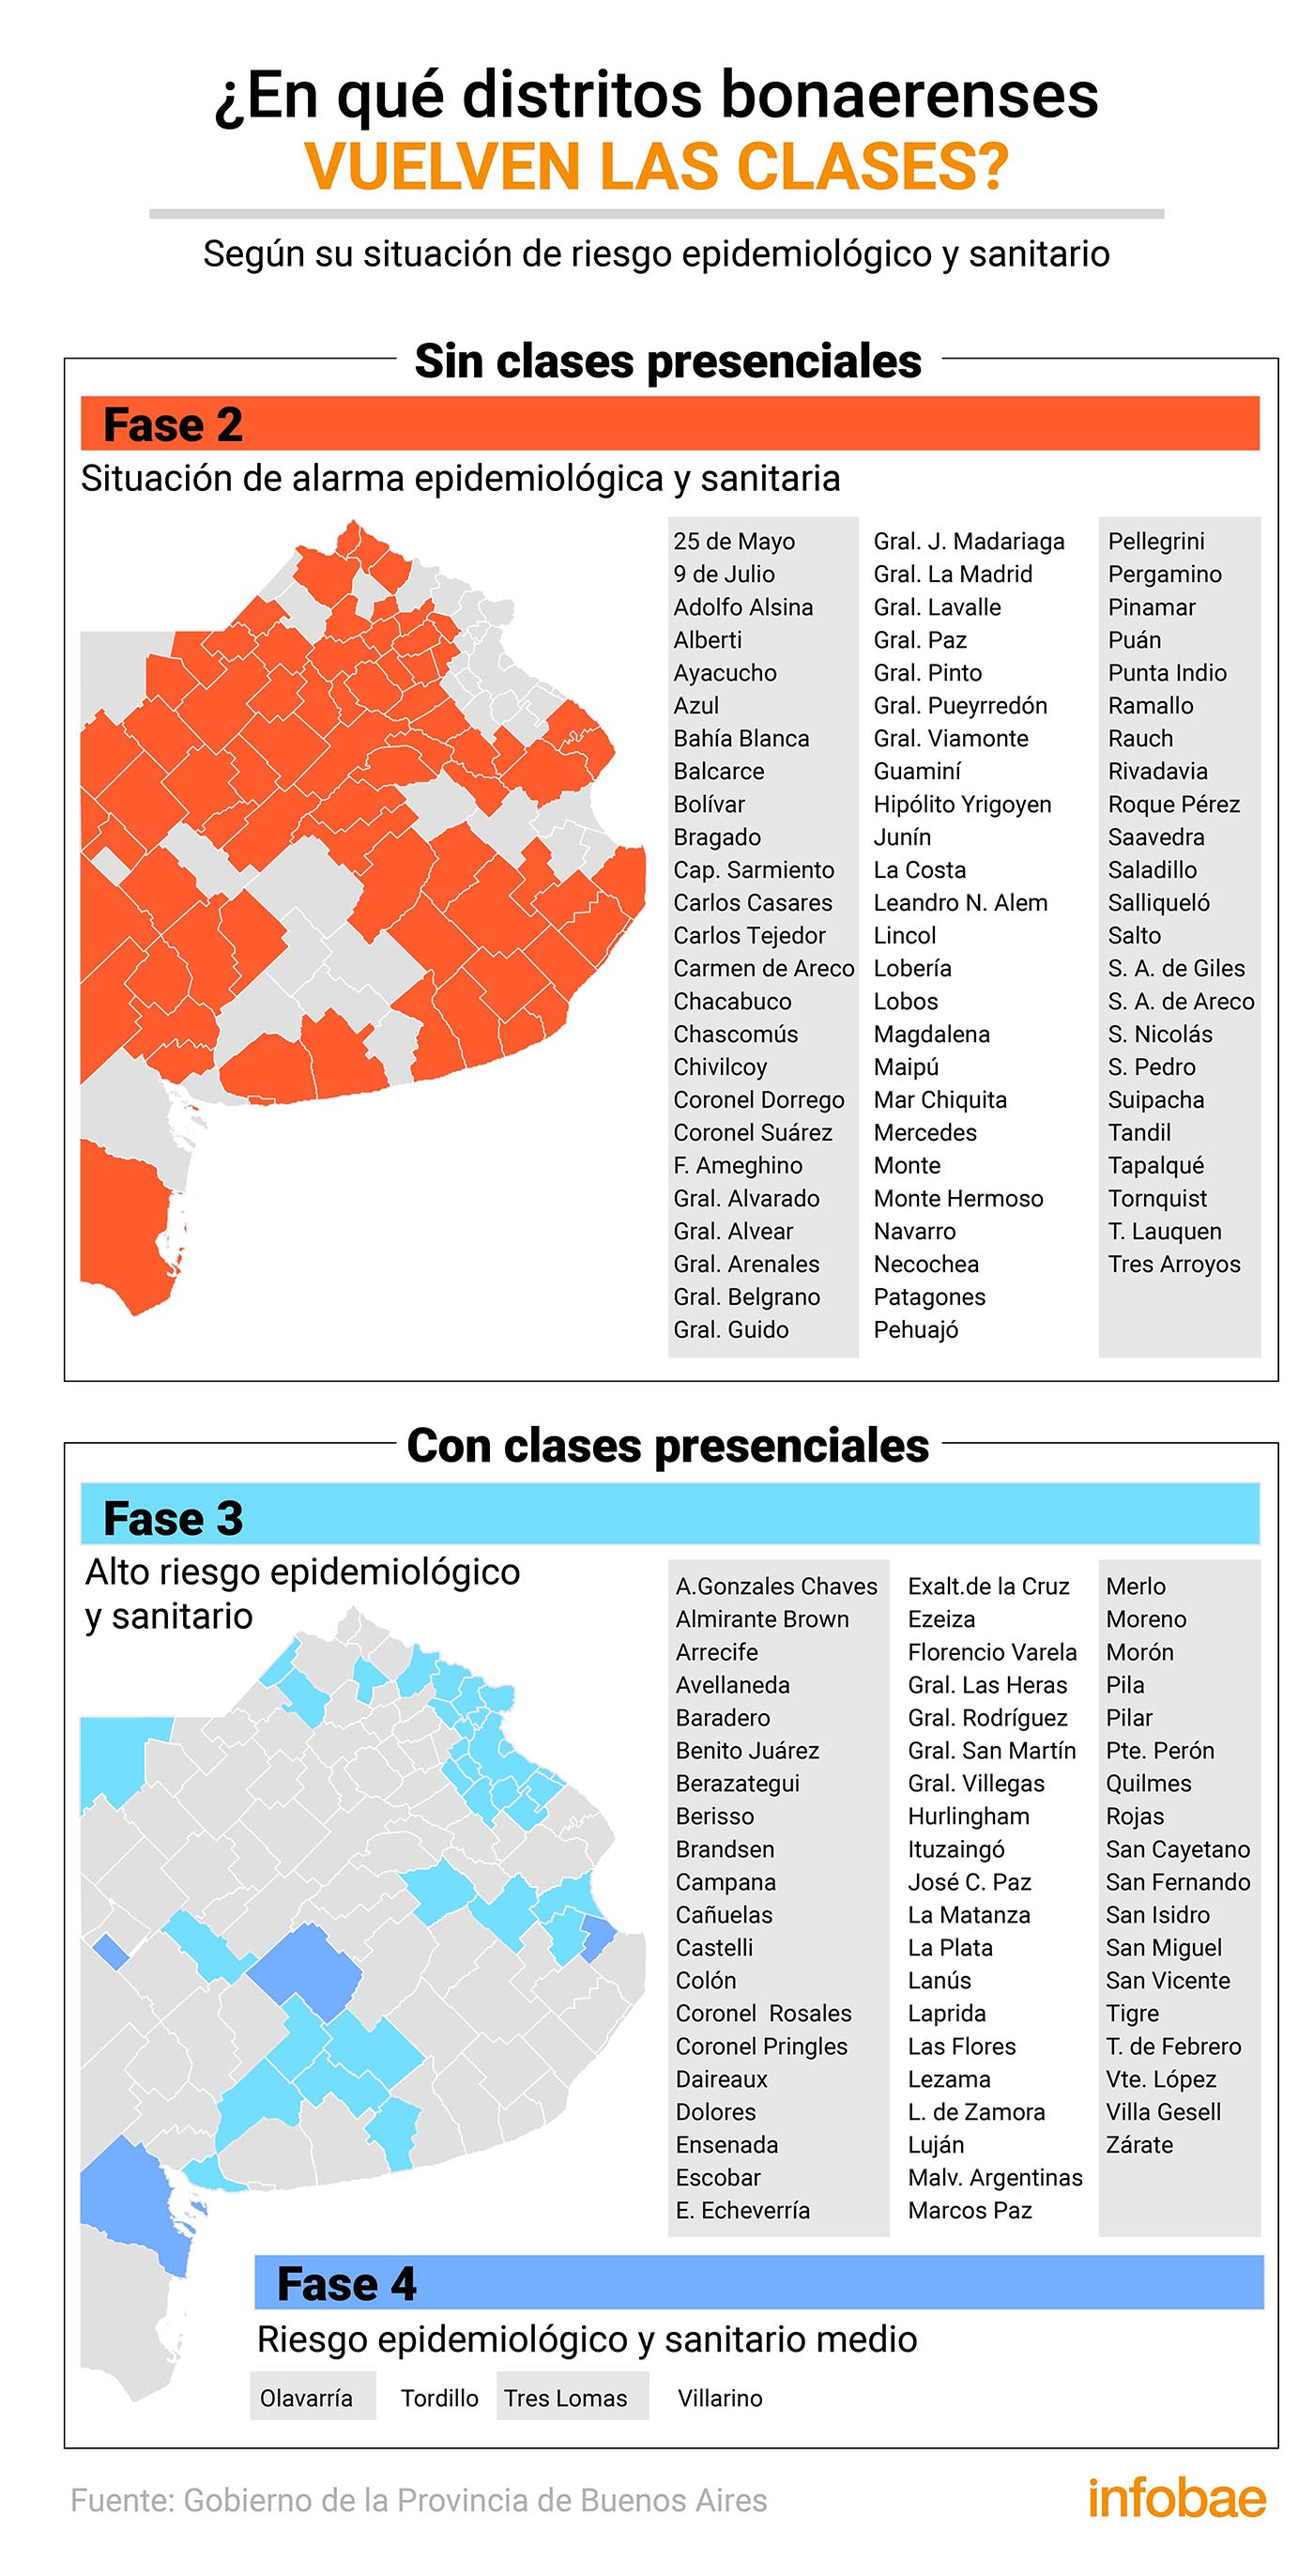 qué municipios de la de Buenos Aires vuelven las clases el miércoles - Infobae